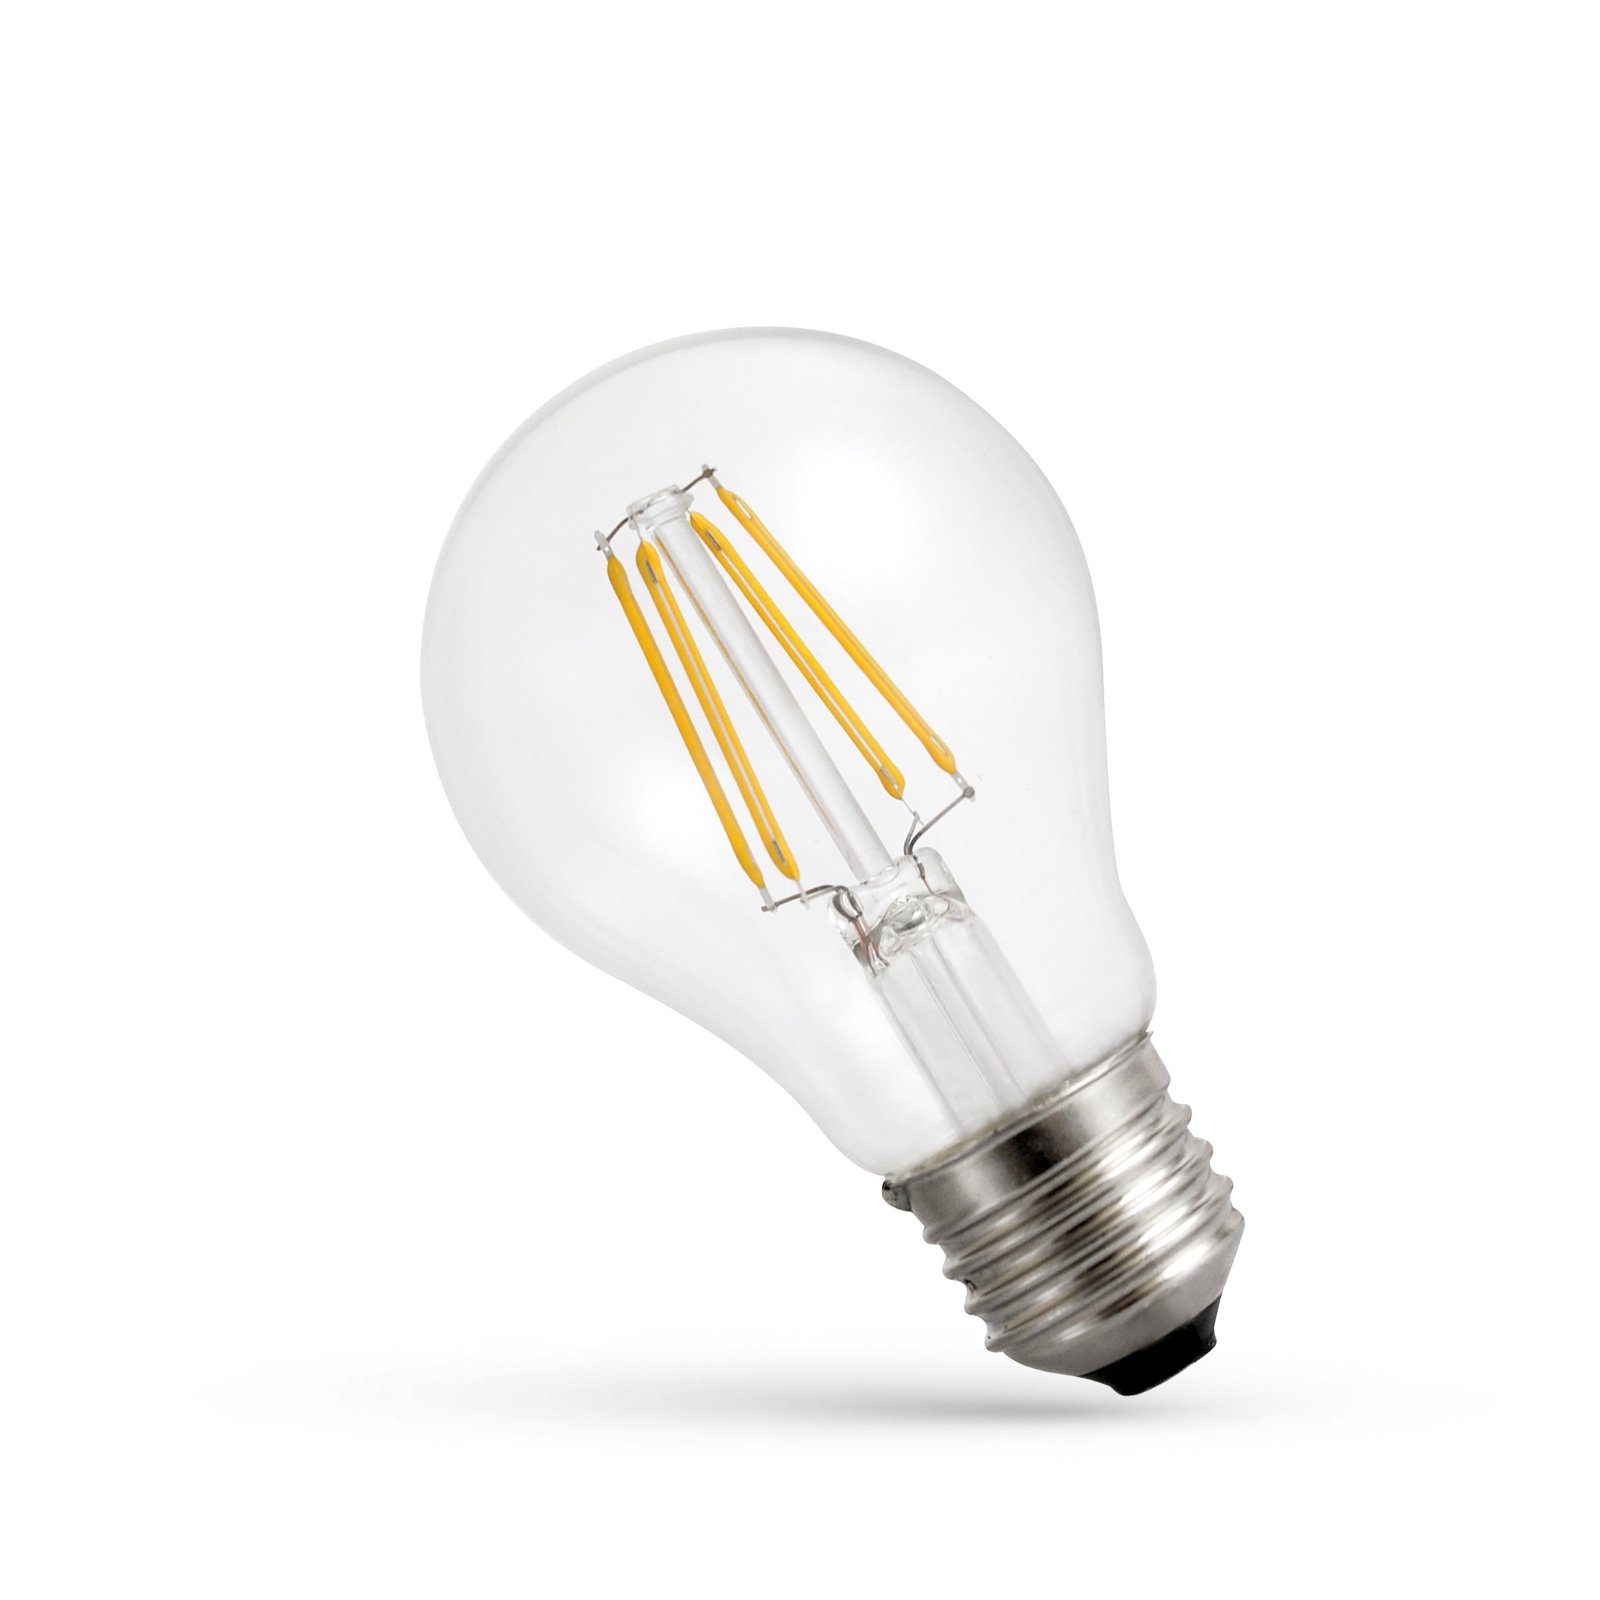 LED SpectrumLED Warmweiß, E27, Dimmbar, E27 1100lm Warmweiß spectrum klar Filament LED-Leuchtmittel Filament 2700K DIMMBAR, 8,5W=75W 300° Klar A60 LED